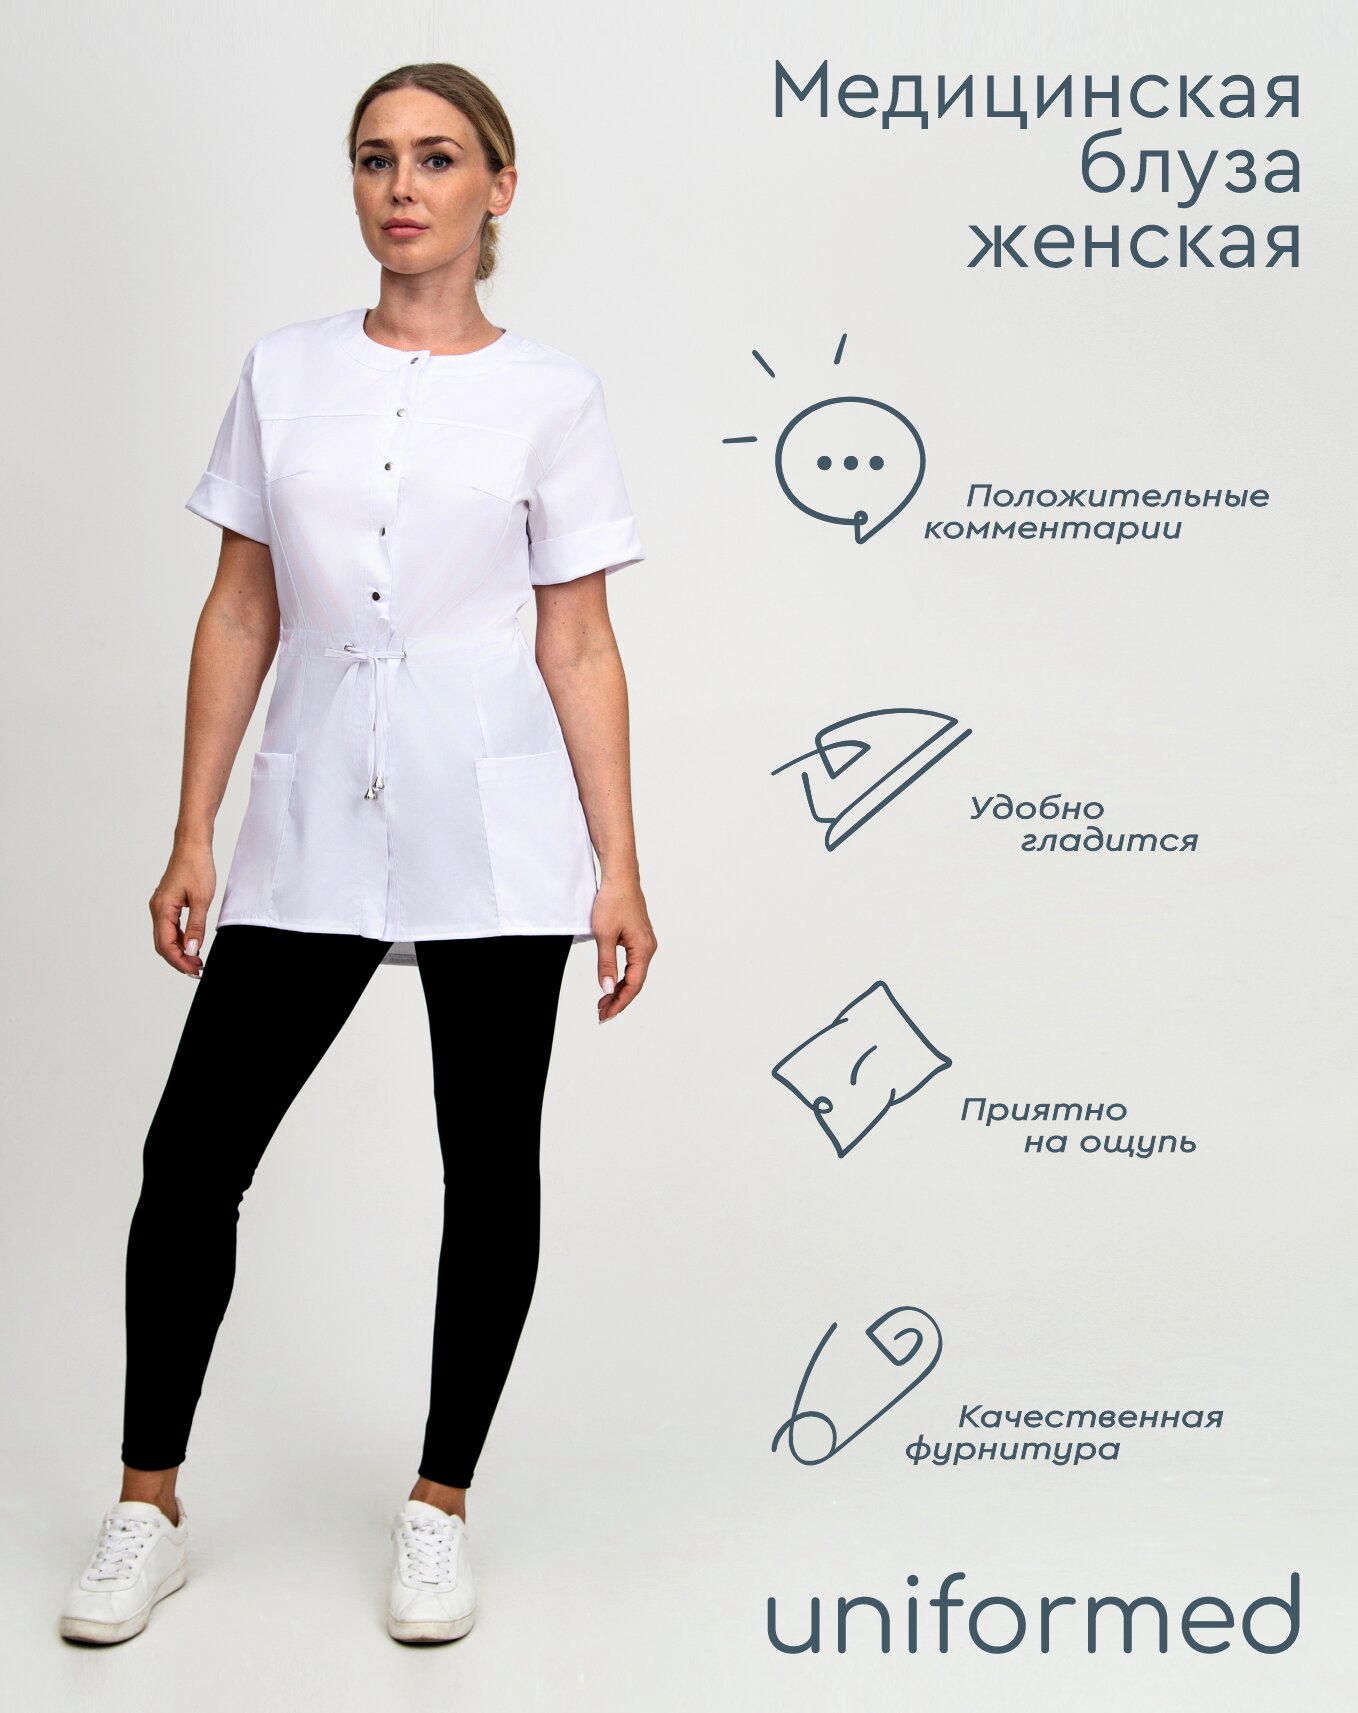 Медицинская женская блуза 404.4.6 Uniformed, ткань сатори стрейч, рукав короткий, цвет белый, рост 170-176, размер 58